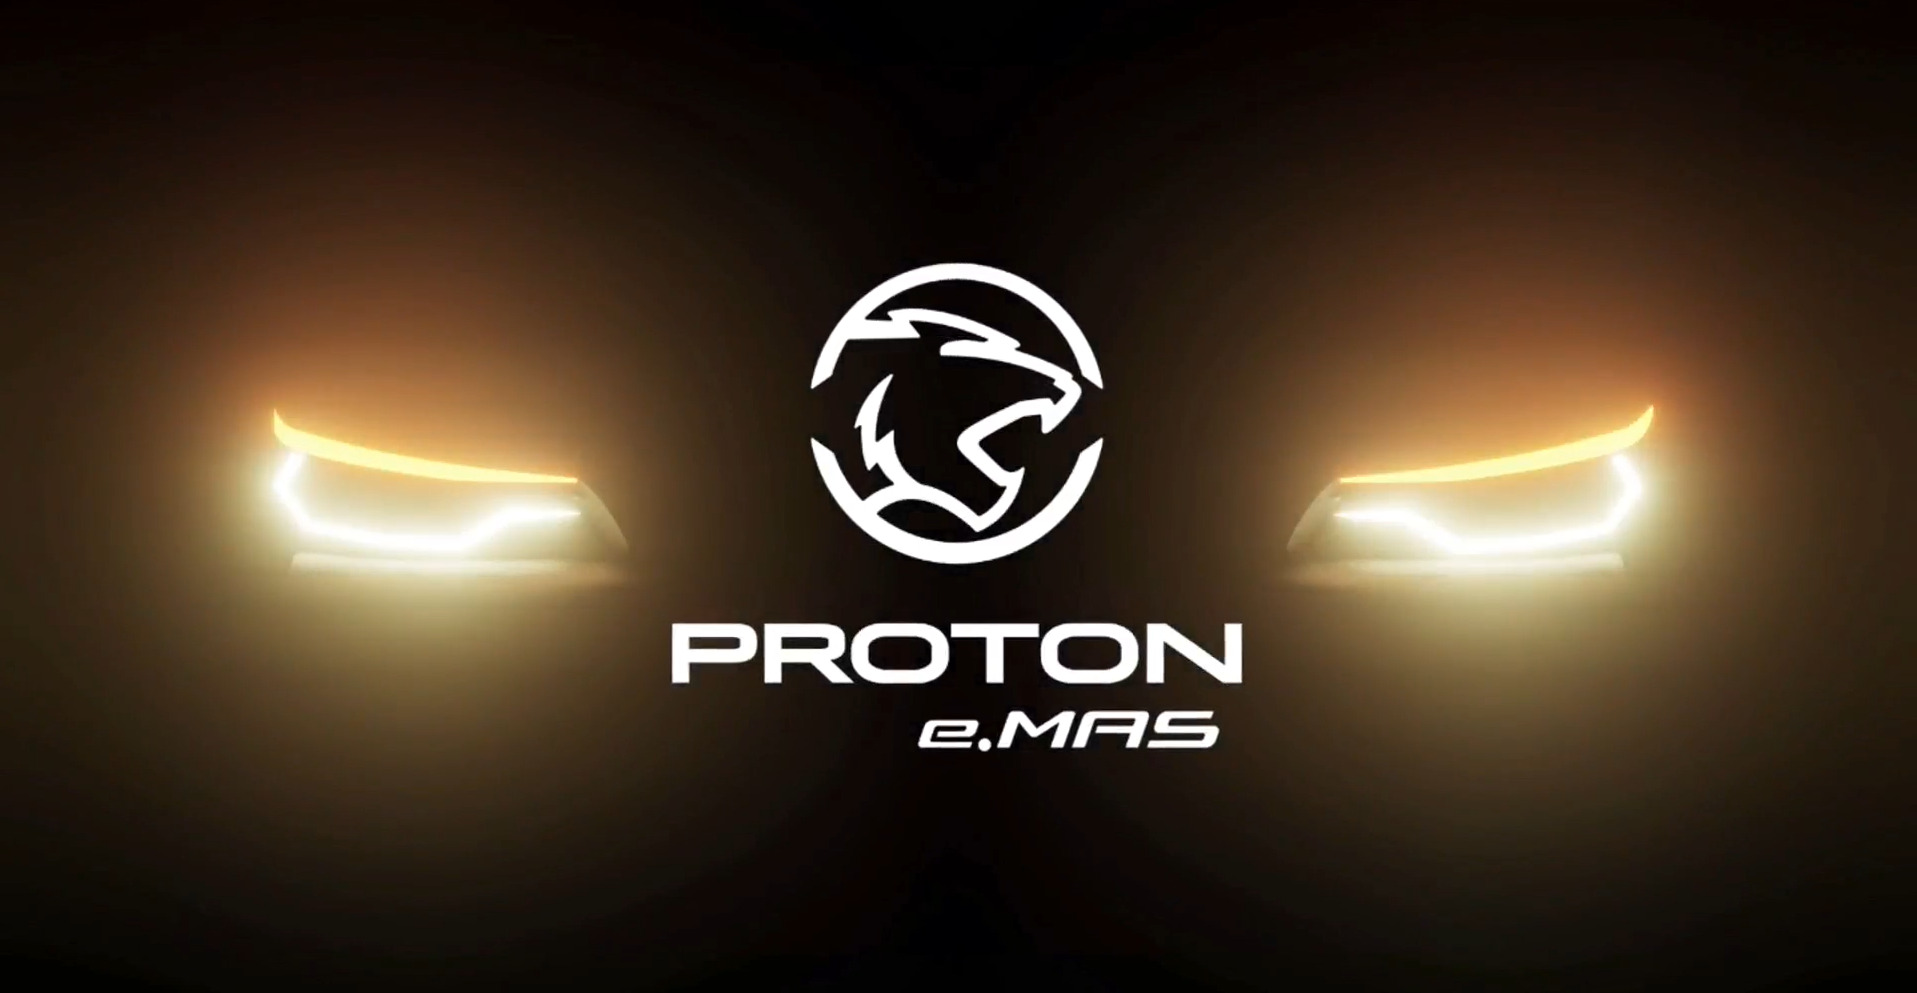 宝腾推出e.MAS 品牌 首款电动车年底上市